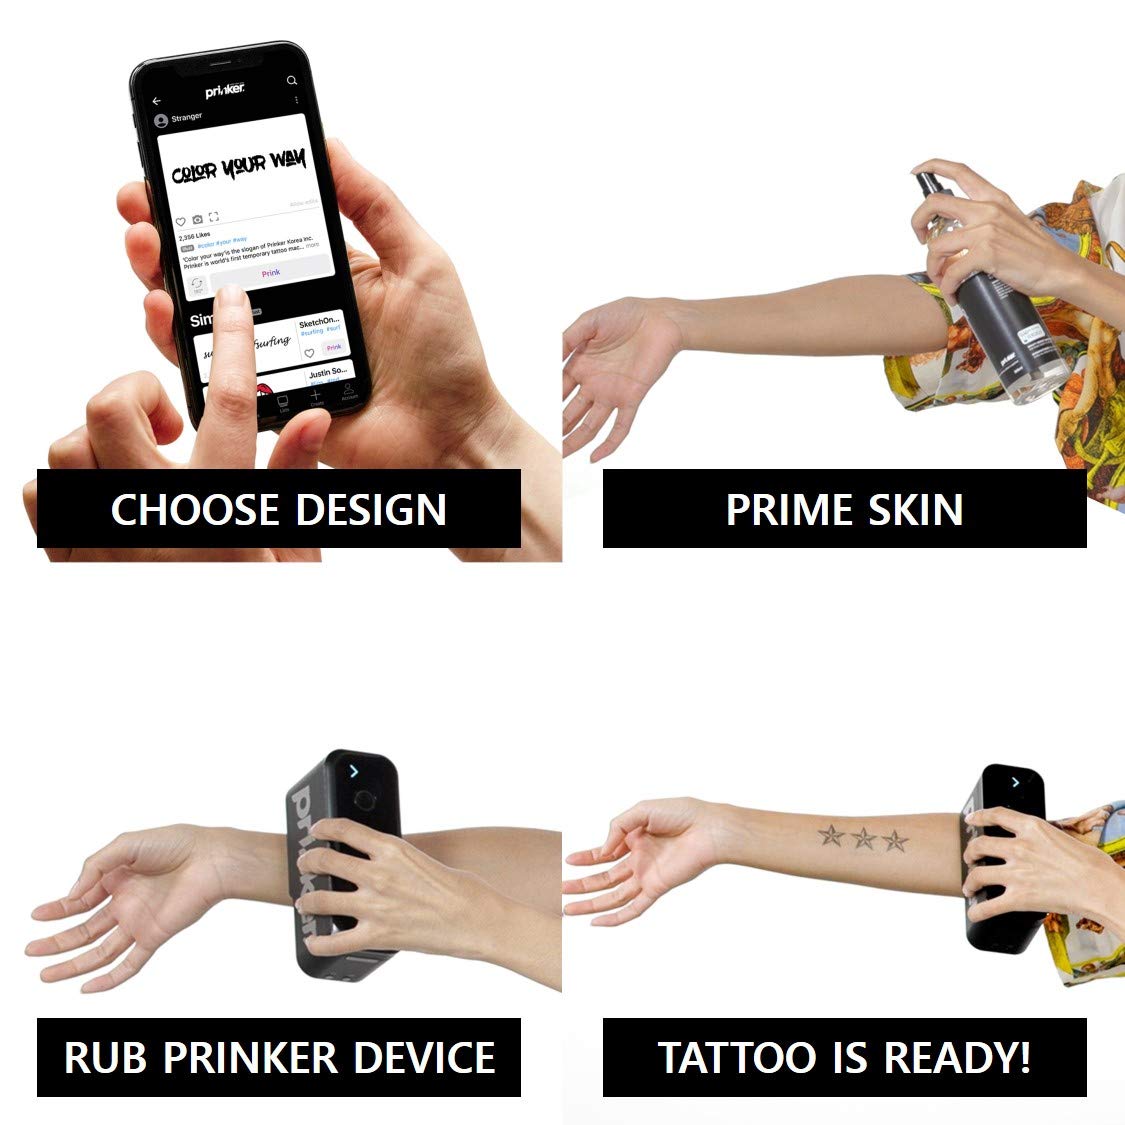 PRODUCTO 596 Paquete de dispositivo de tatuaje temporal Prinker S para sus tatuajes personalizados instantáneos con tinta negra cosmética premium - Compatible con dispositivos iOS y Android